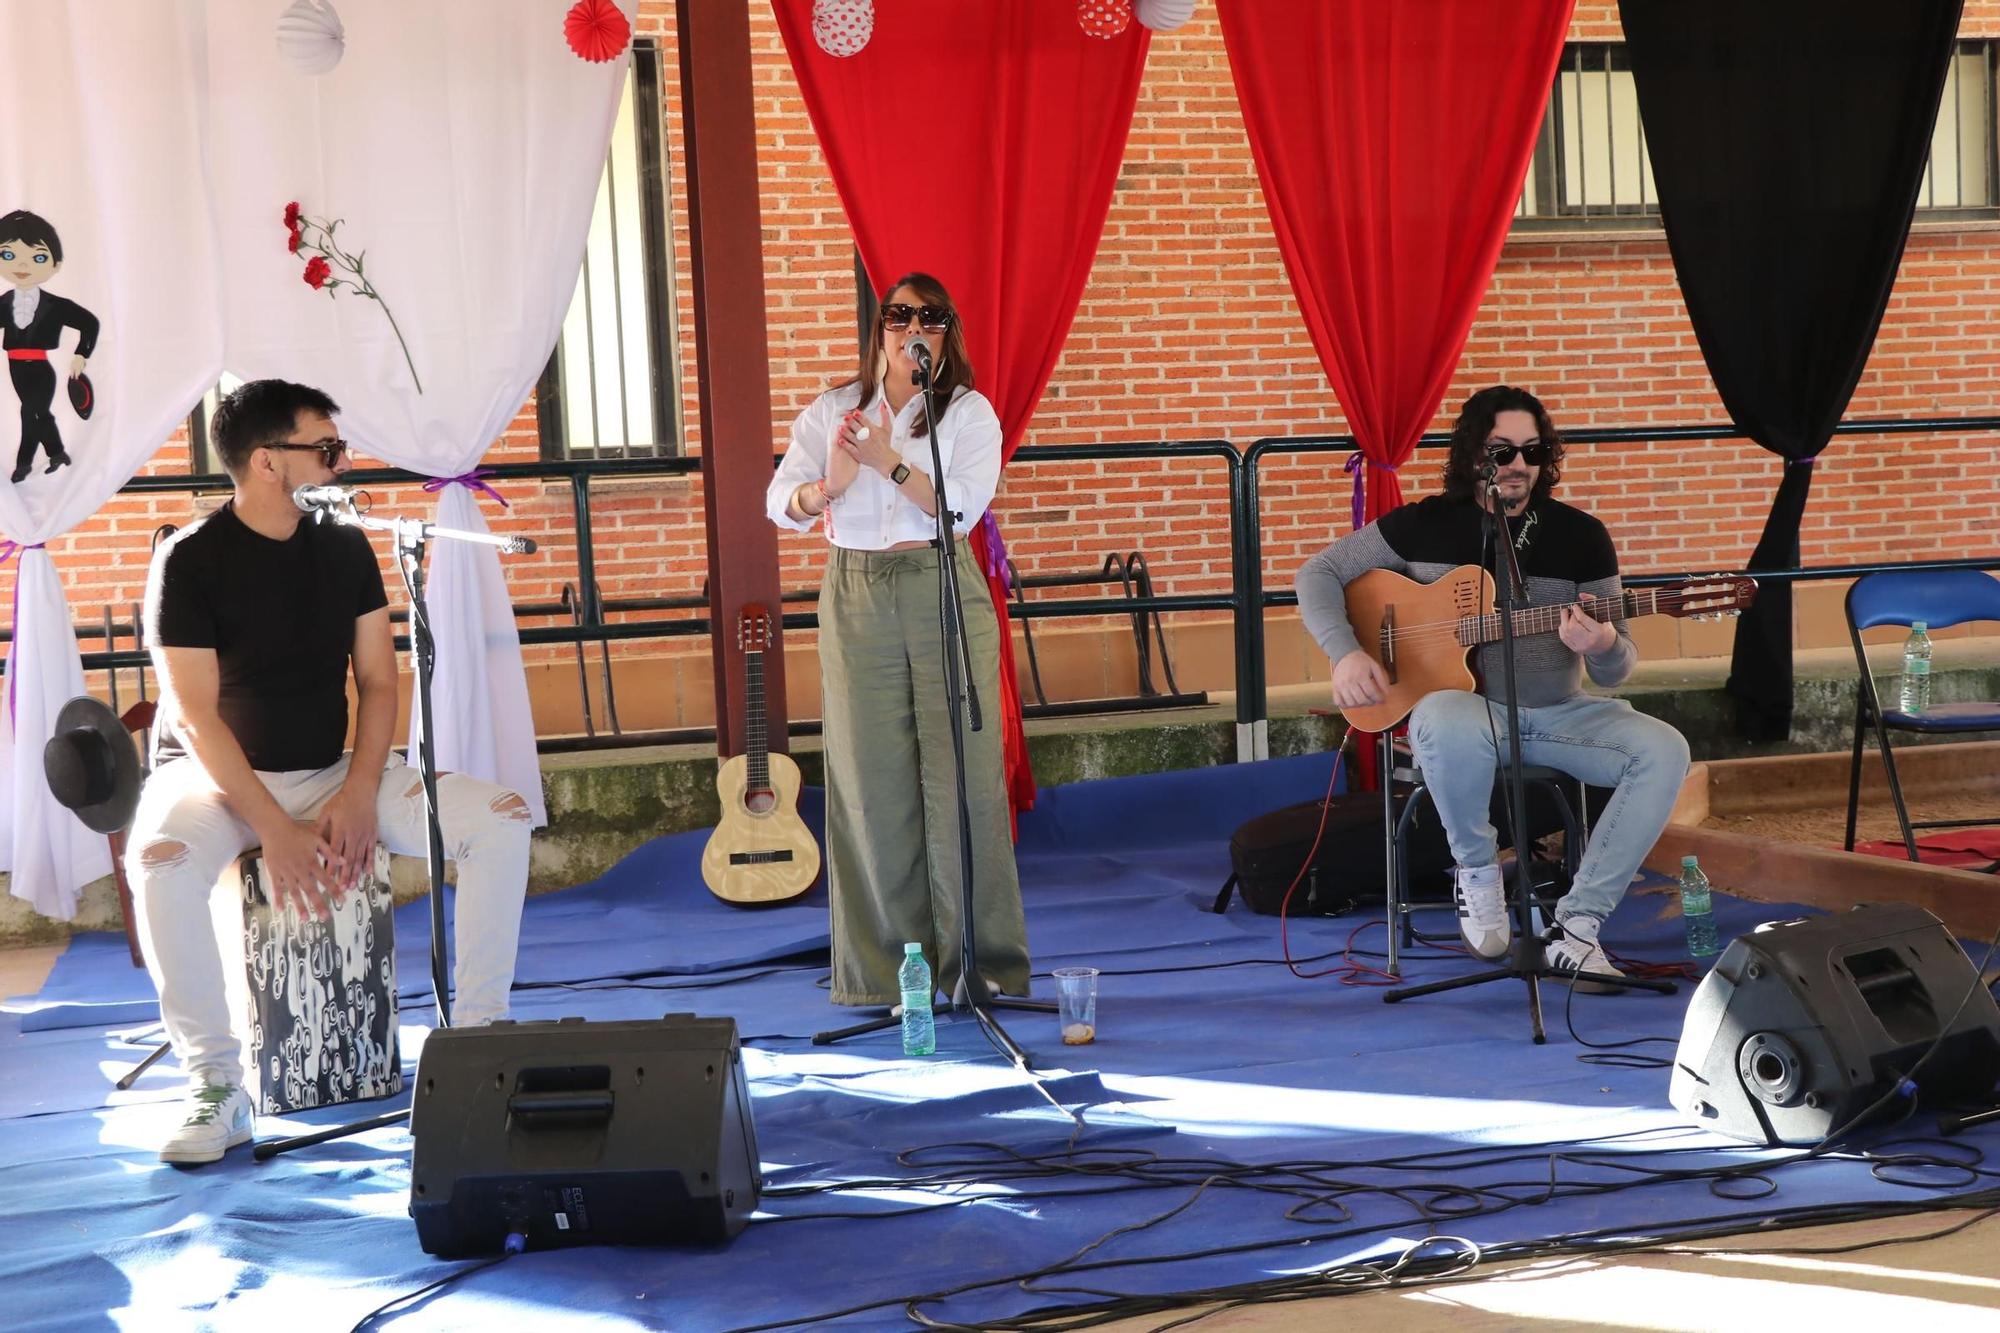 GALERÍA | Coreses se va de "Ruta flamenca"